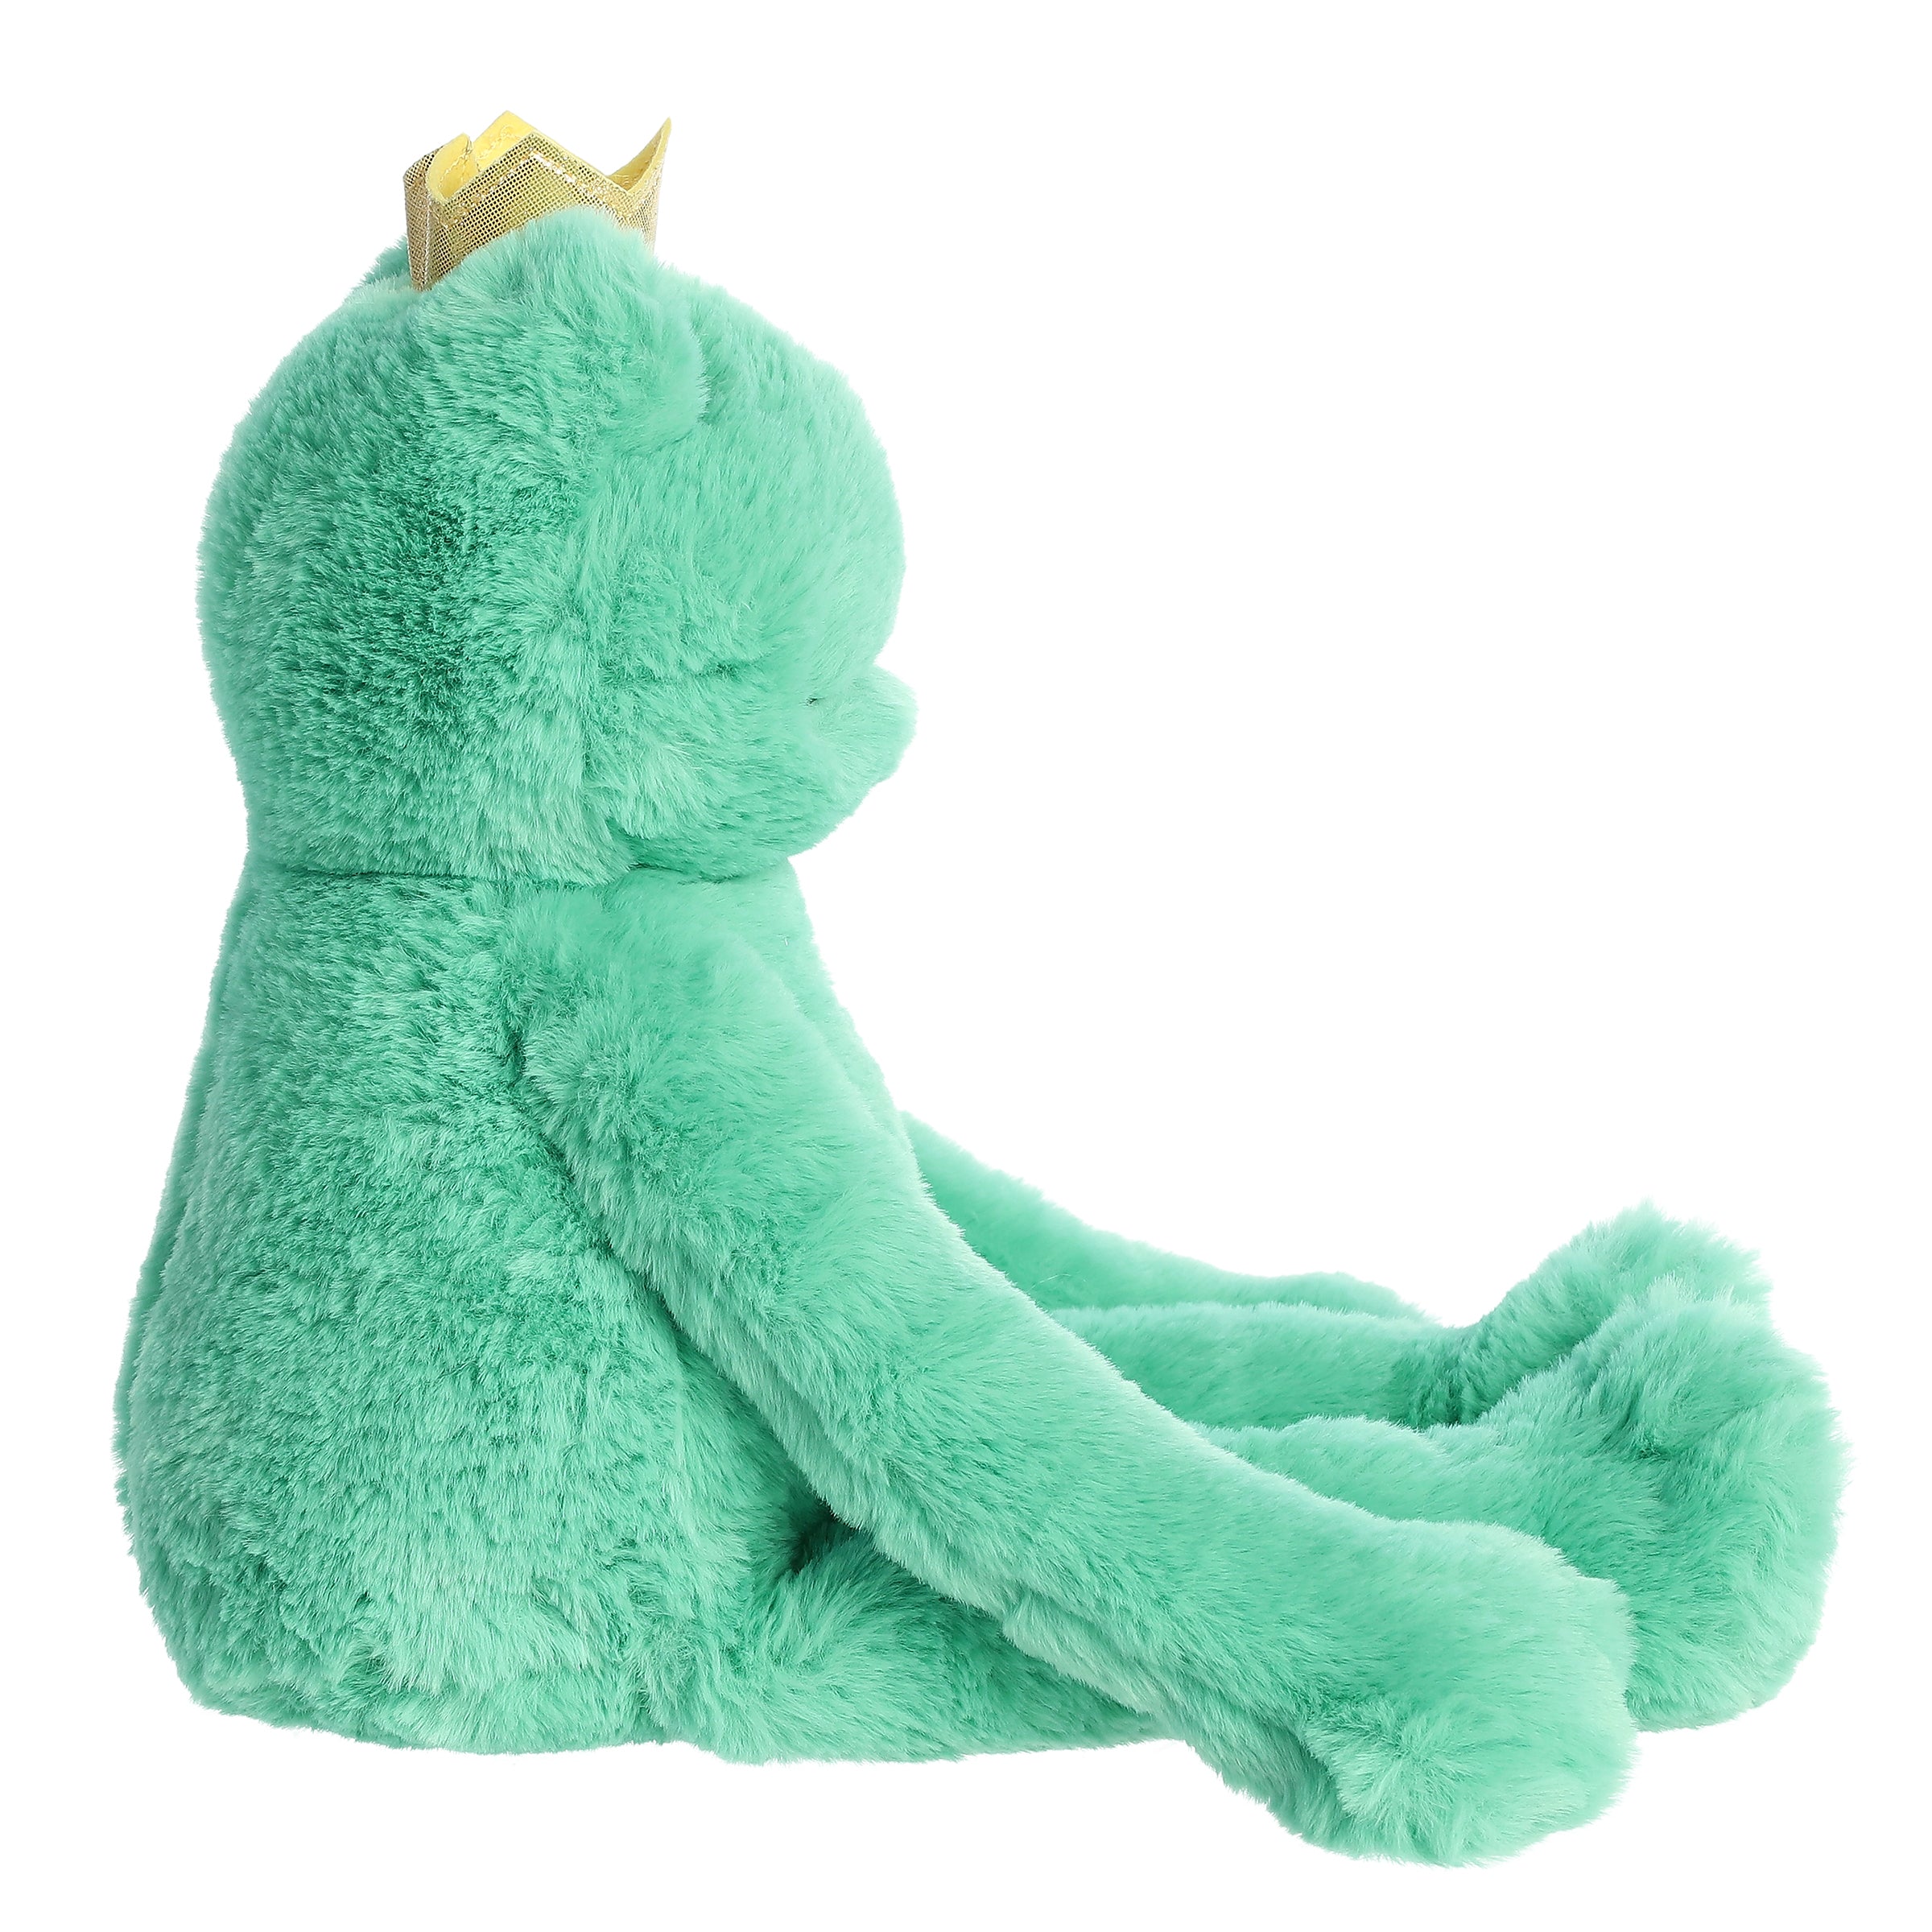 Teddy Frog Soft Stuffed Plush Toy – Gage Beasley